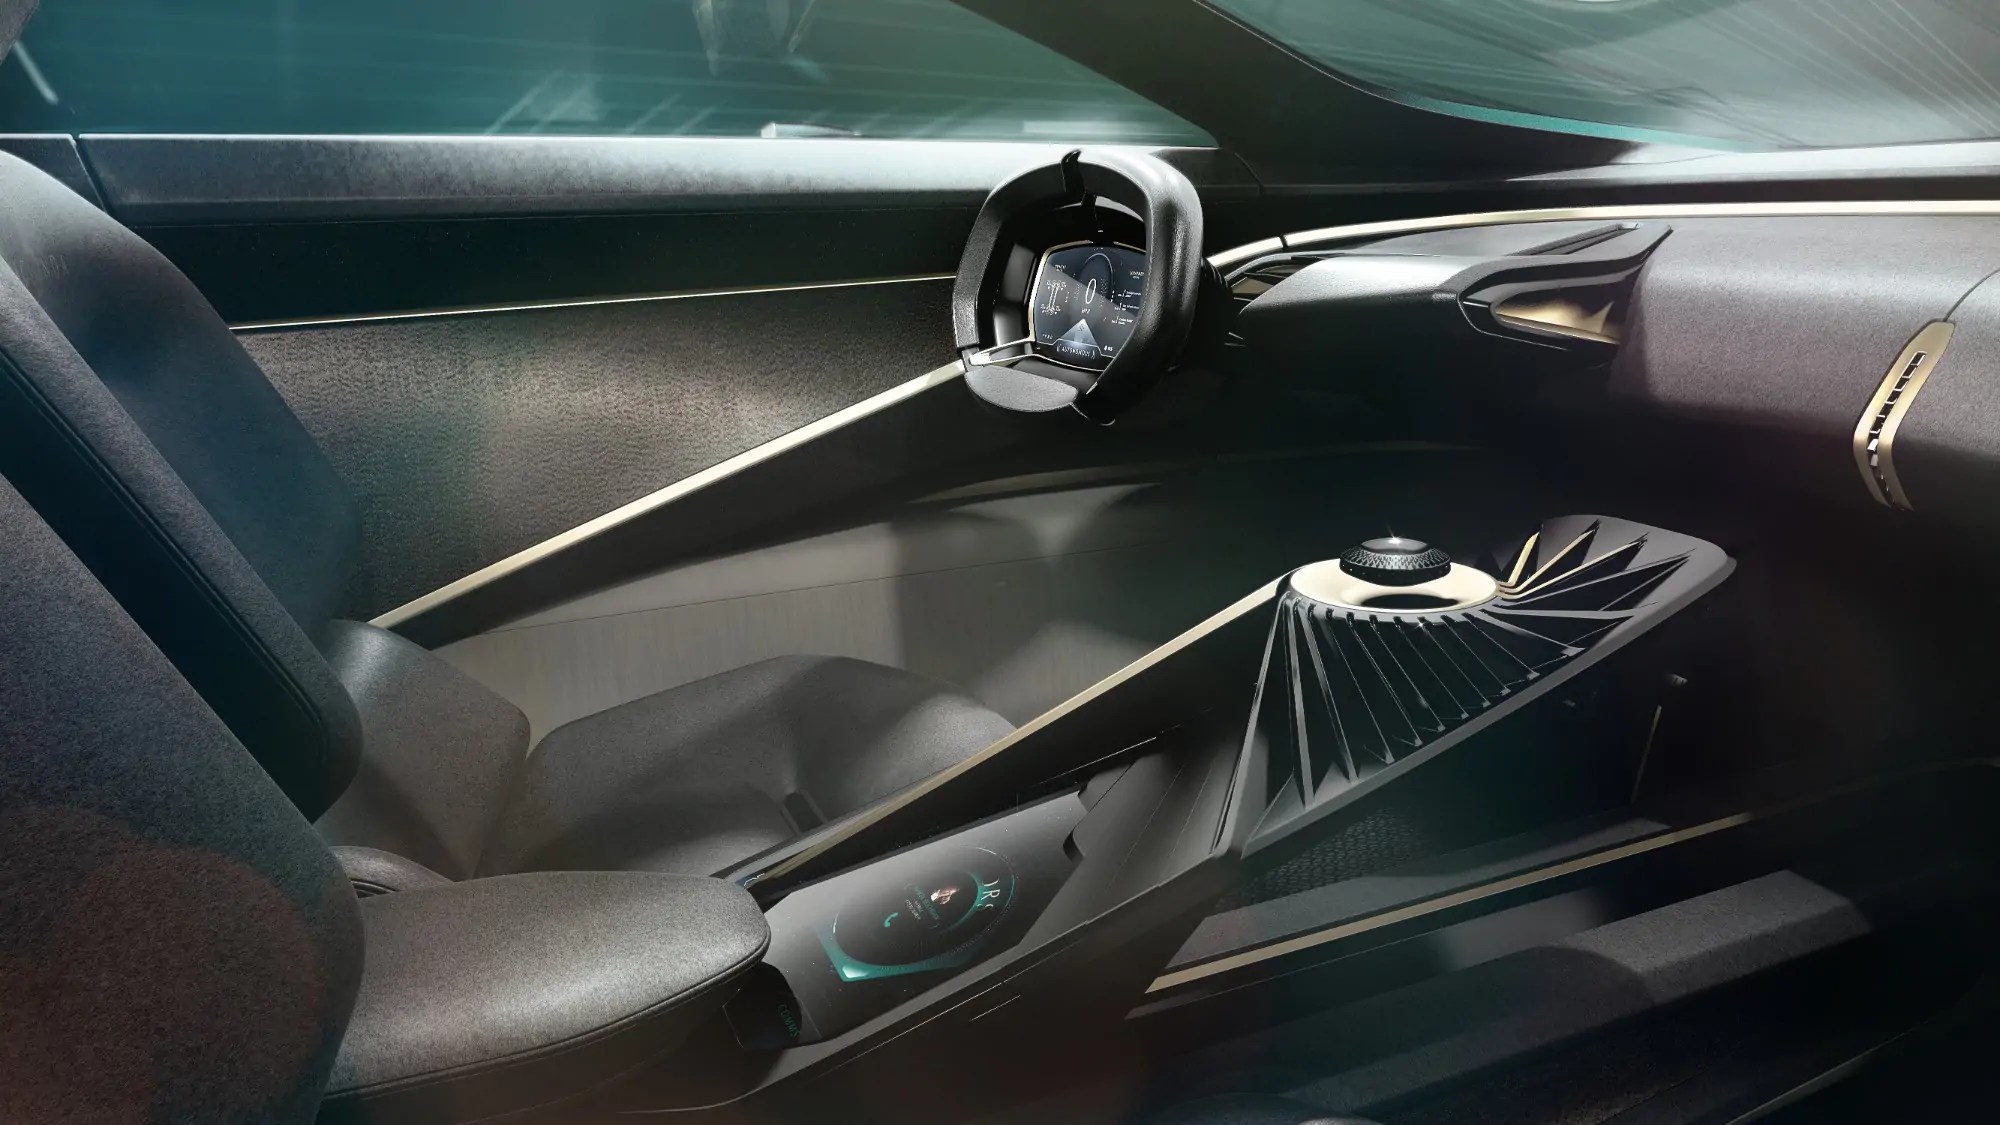 أستون مارتن تكشف عن مفهومها المستقبلي لسيارات الدفع الرباعي في معرض جنيف الدولي للسيارات